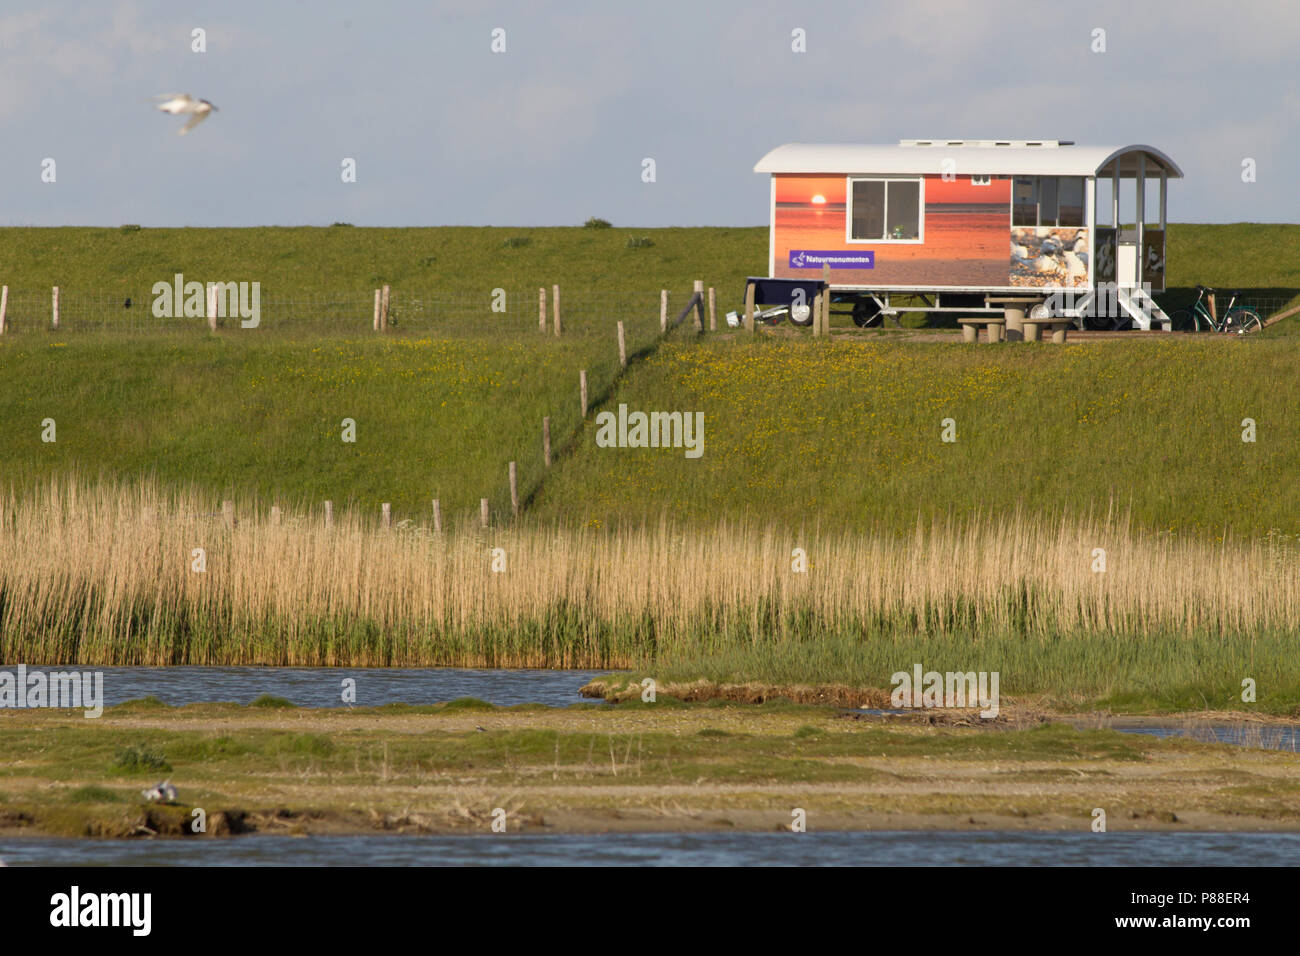 Wadwachters wagen bij Utopia, Texel, Netherlands Stock Photo